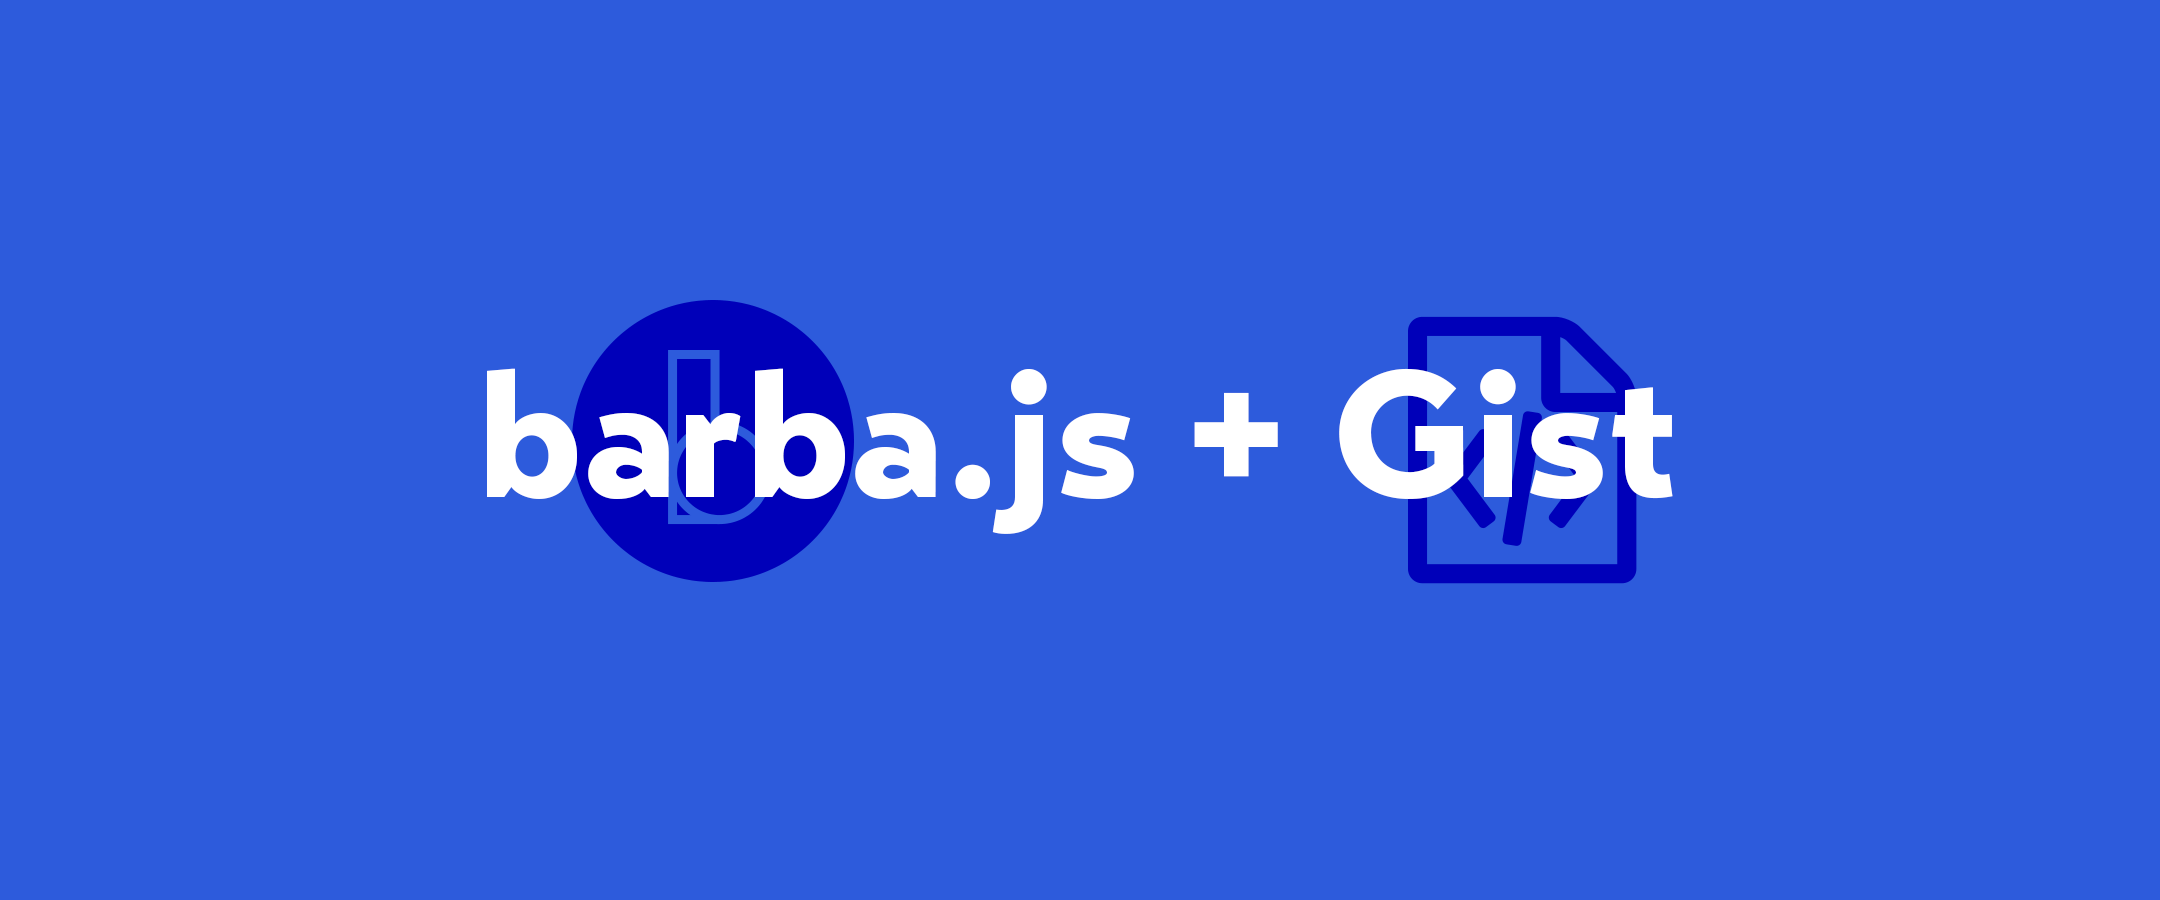 barba.jsを使ったサイトにGistを埋め込む方法